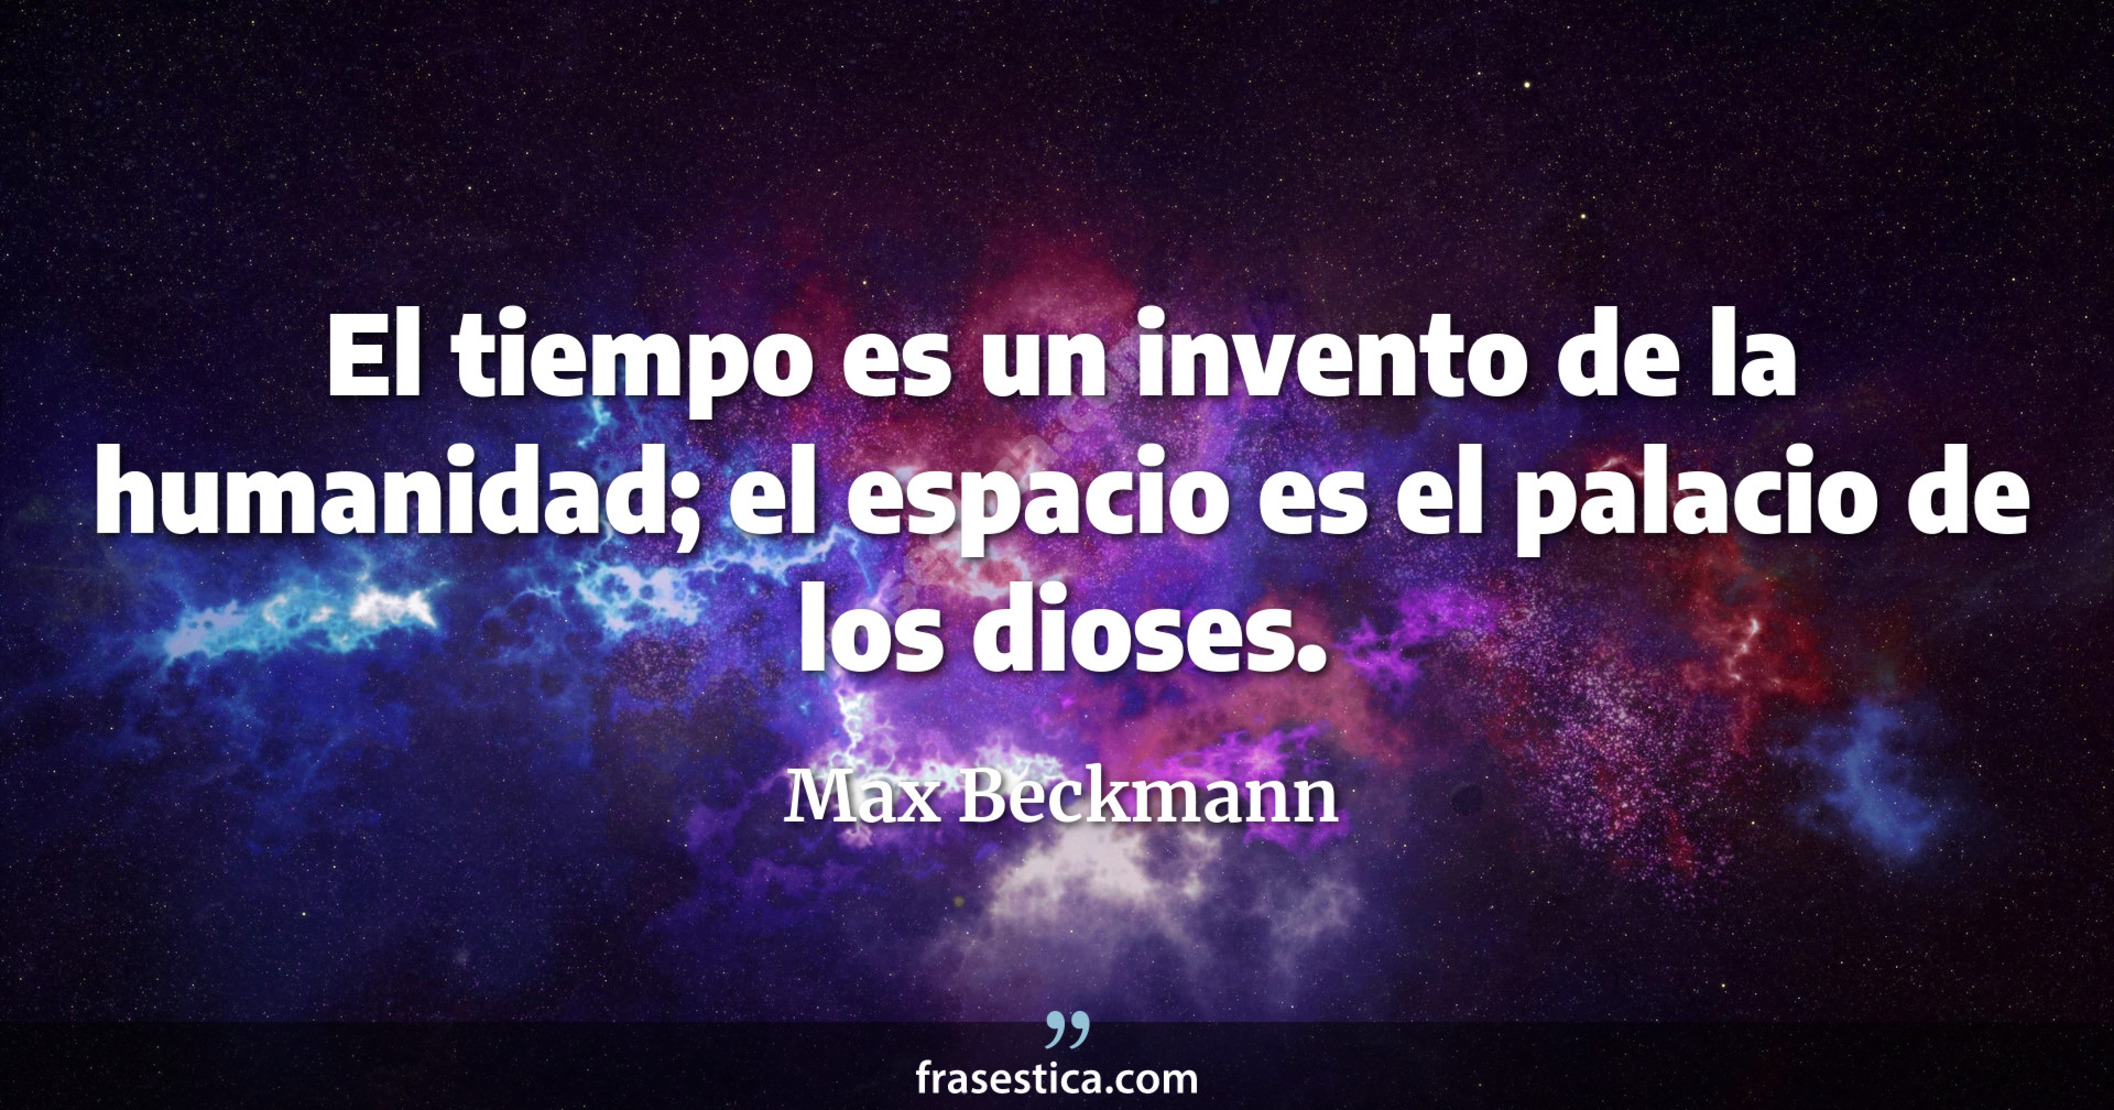 El tiempo es un invento de la humanidad; el espacio es el palacio de los dioses. - Max Beckmann